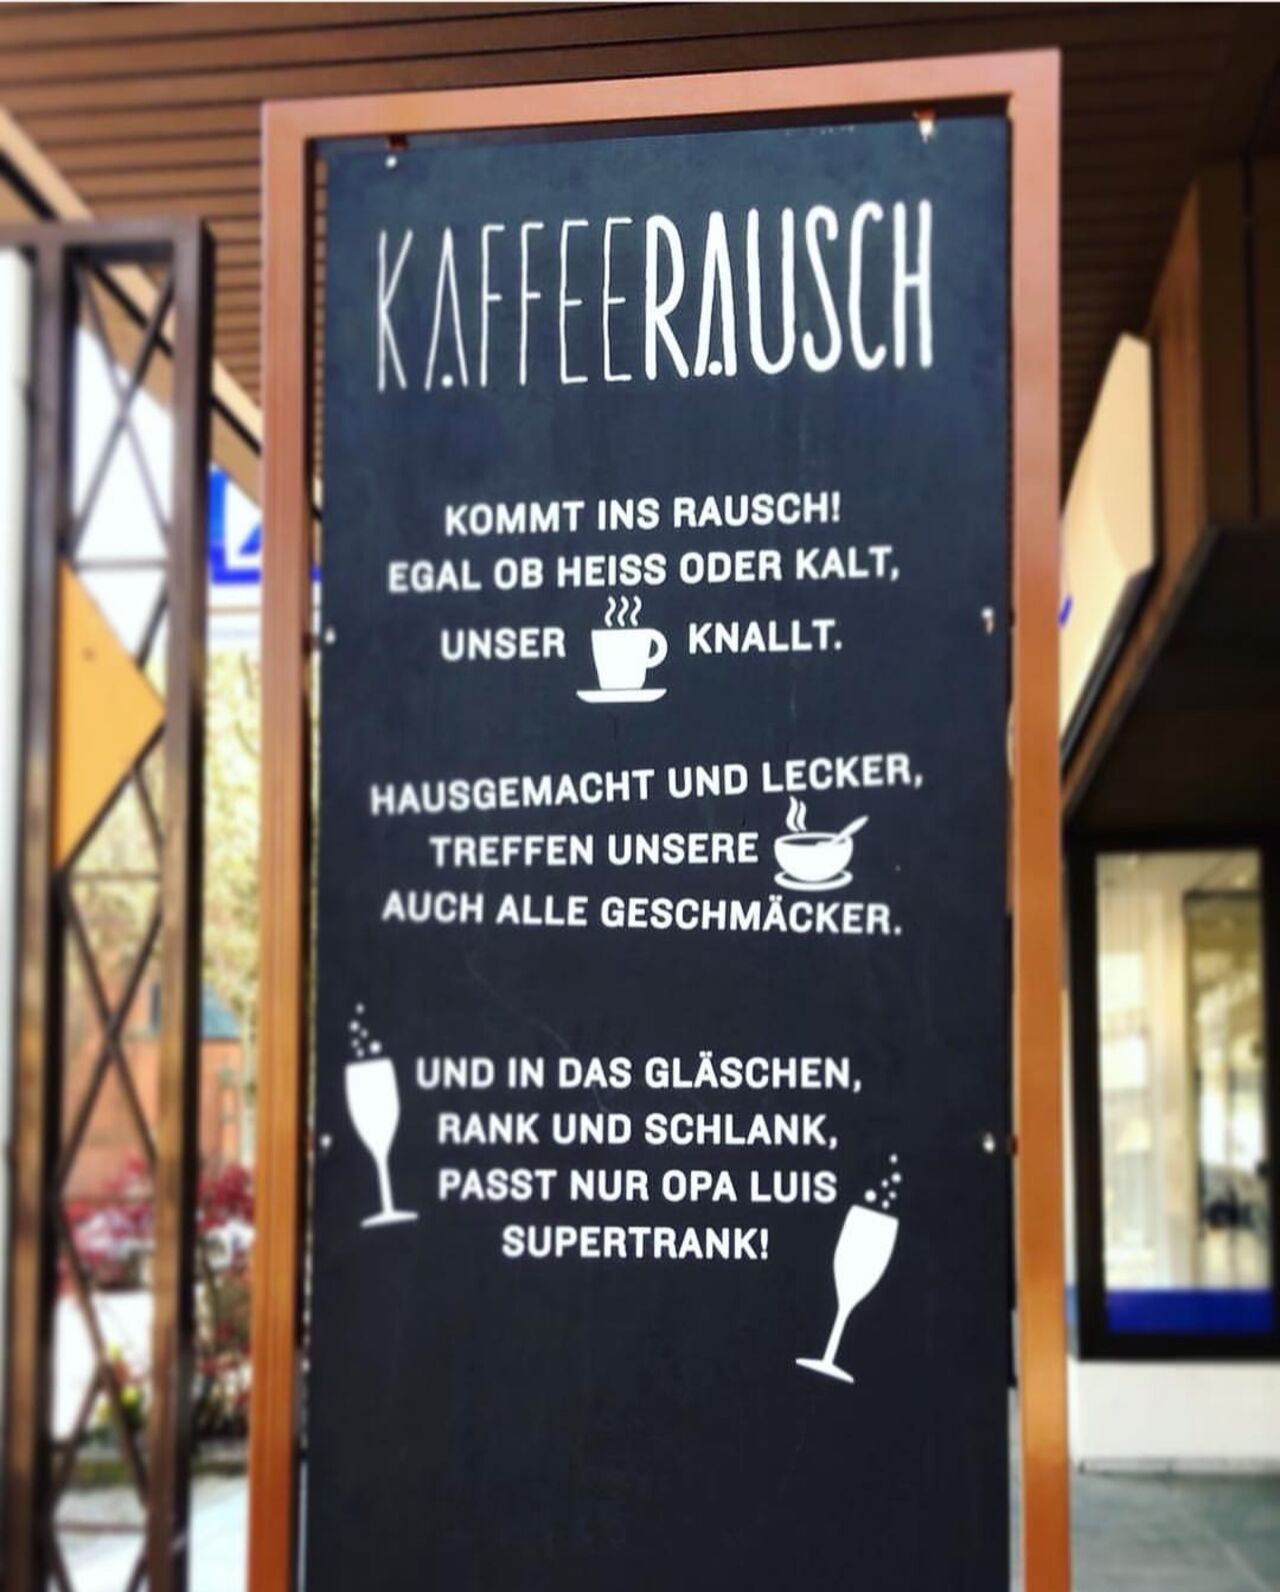 A photo of Kaffeerausch